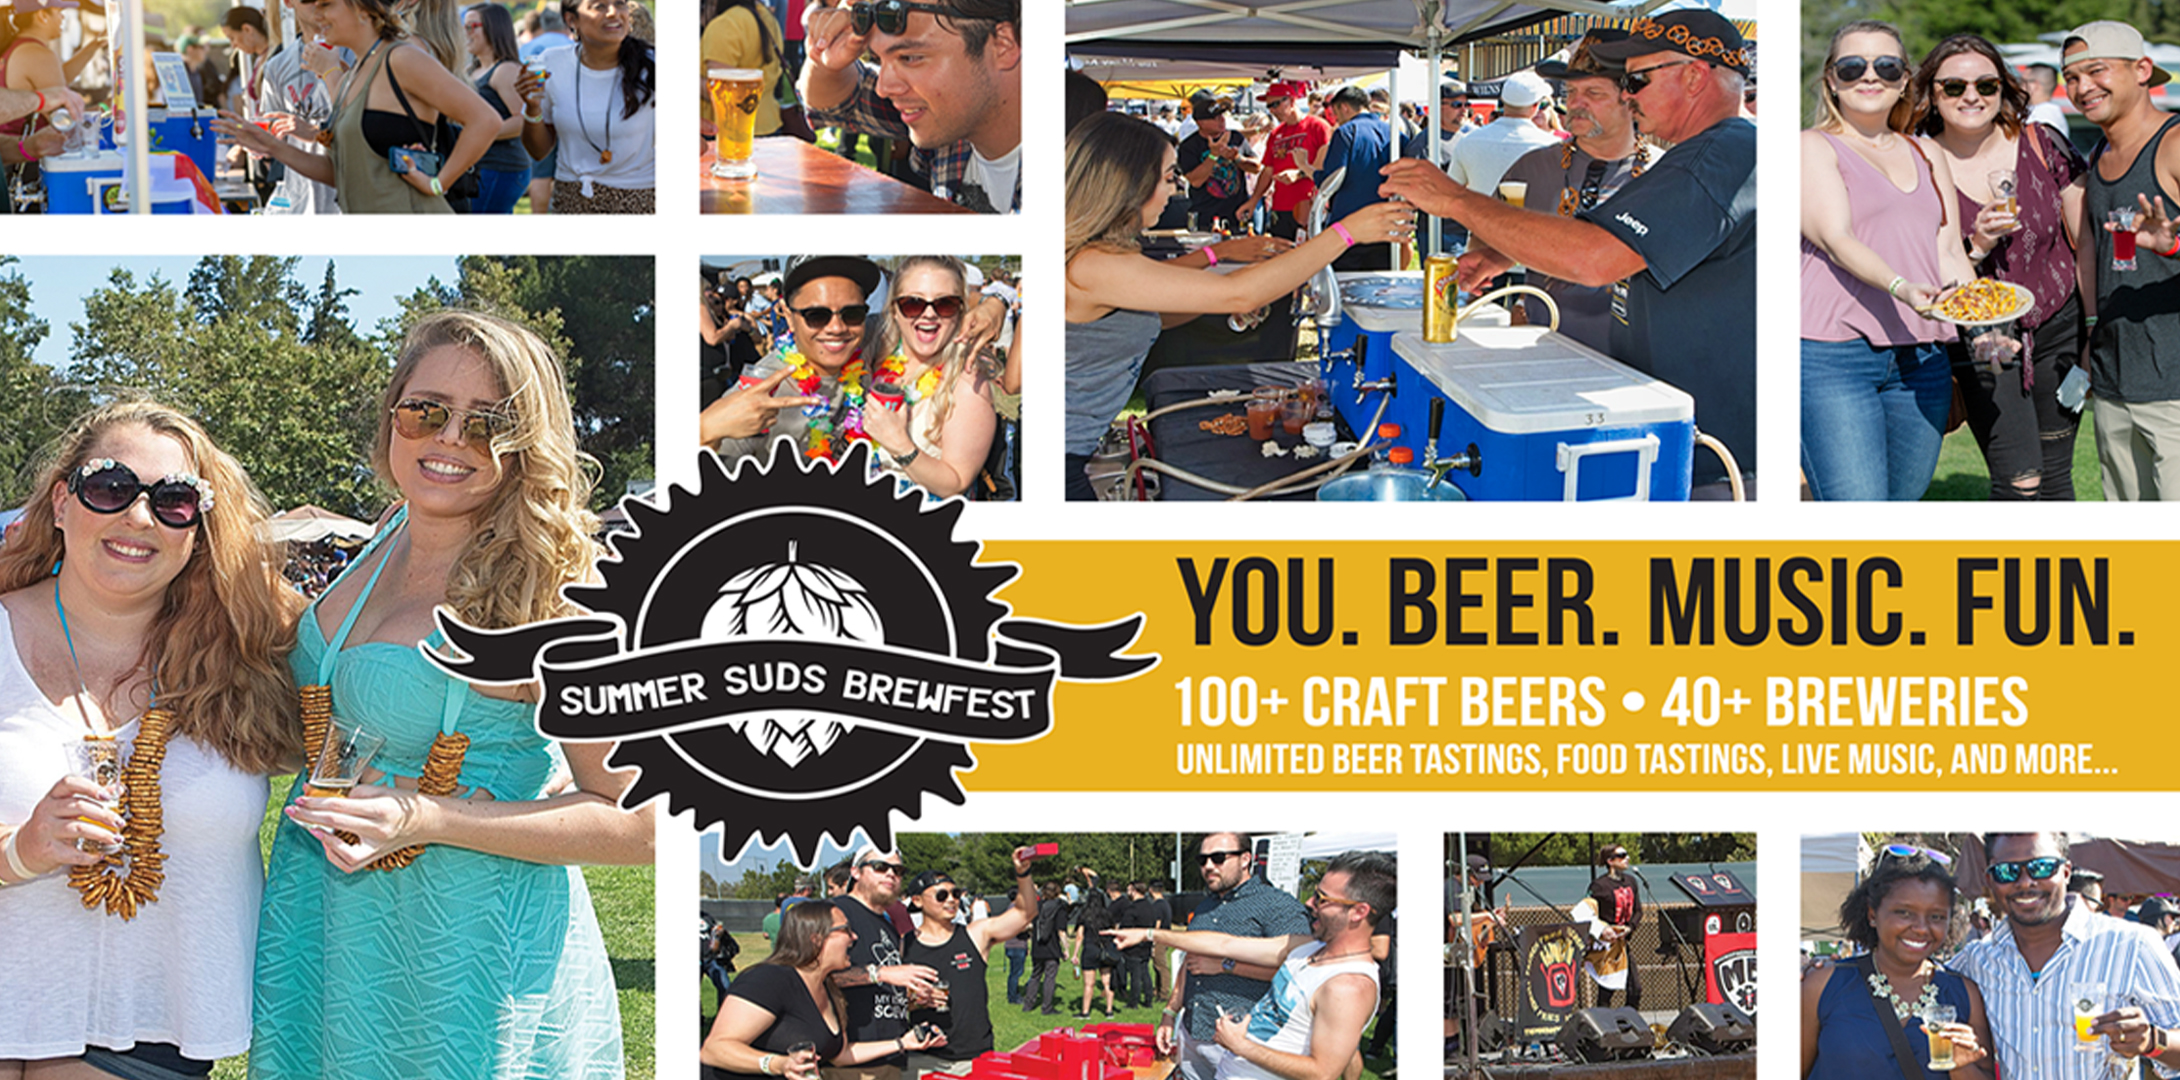 Summer Suds Brewfest banner image